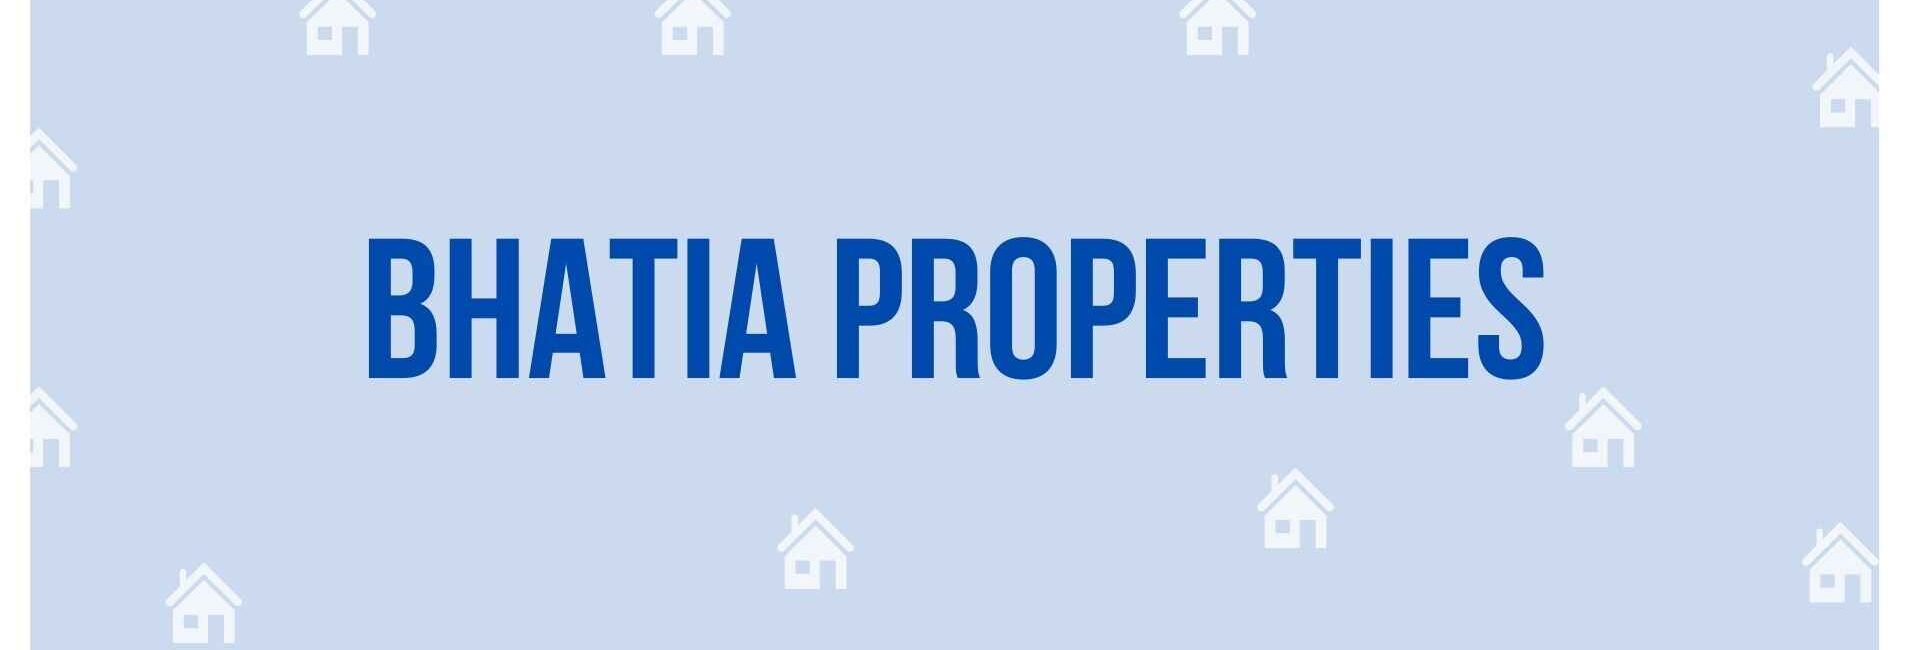 Bhatia Properties - Property Dealer in Noida